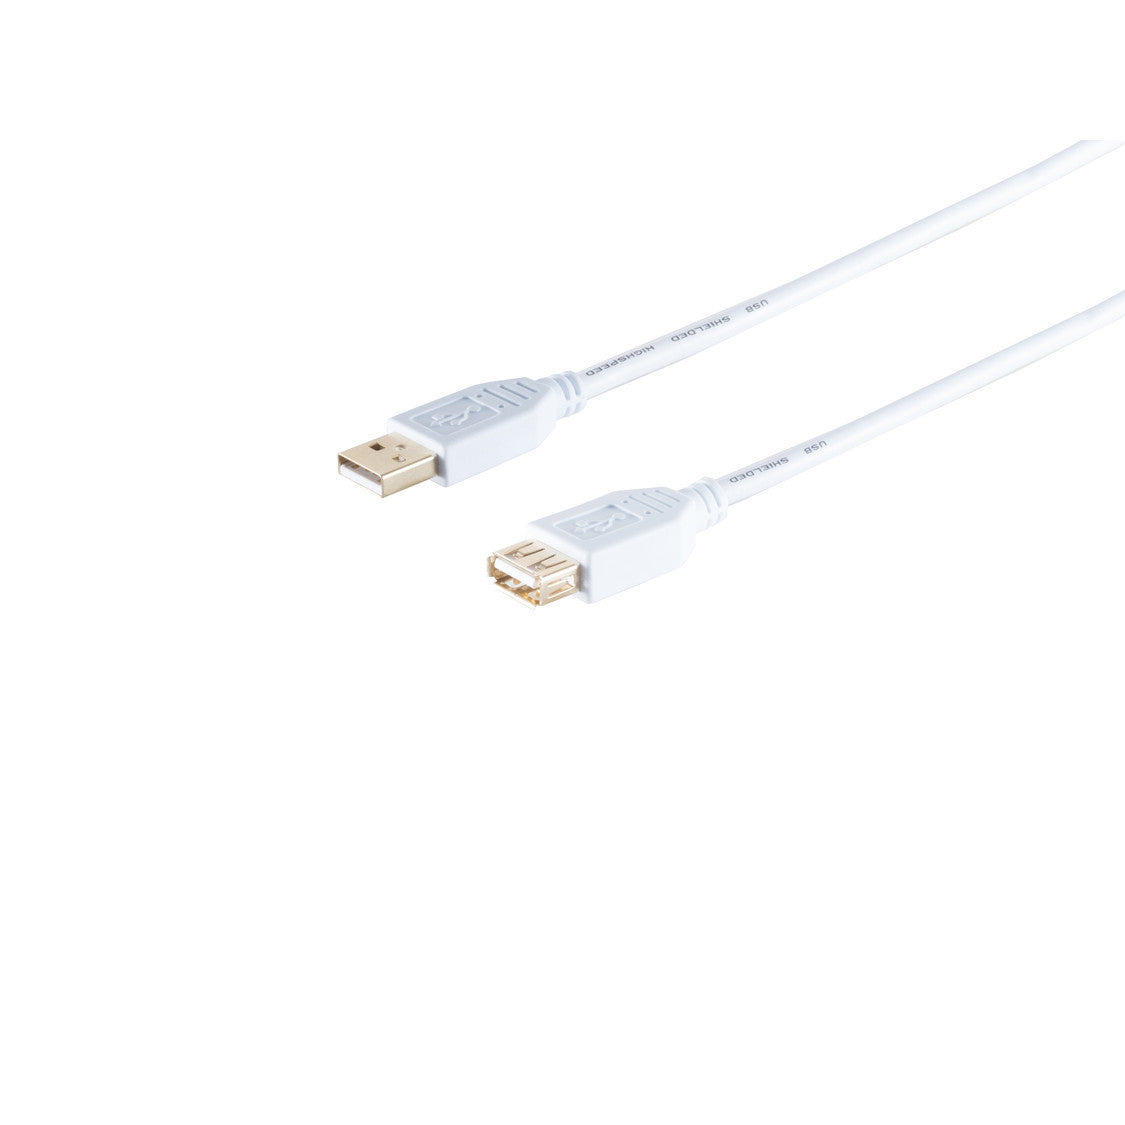 USB Kabel, Typ A Stecker auf Typ A Kupplung, HIGH SPEED, vergoldete Kontakte, USB 2.0